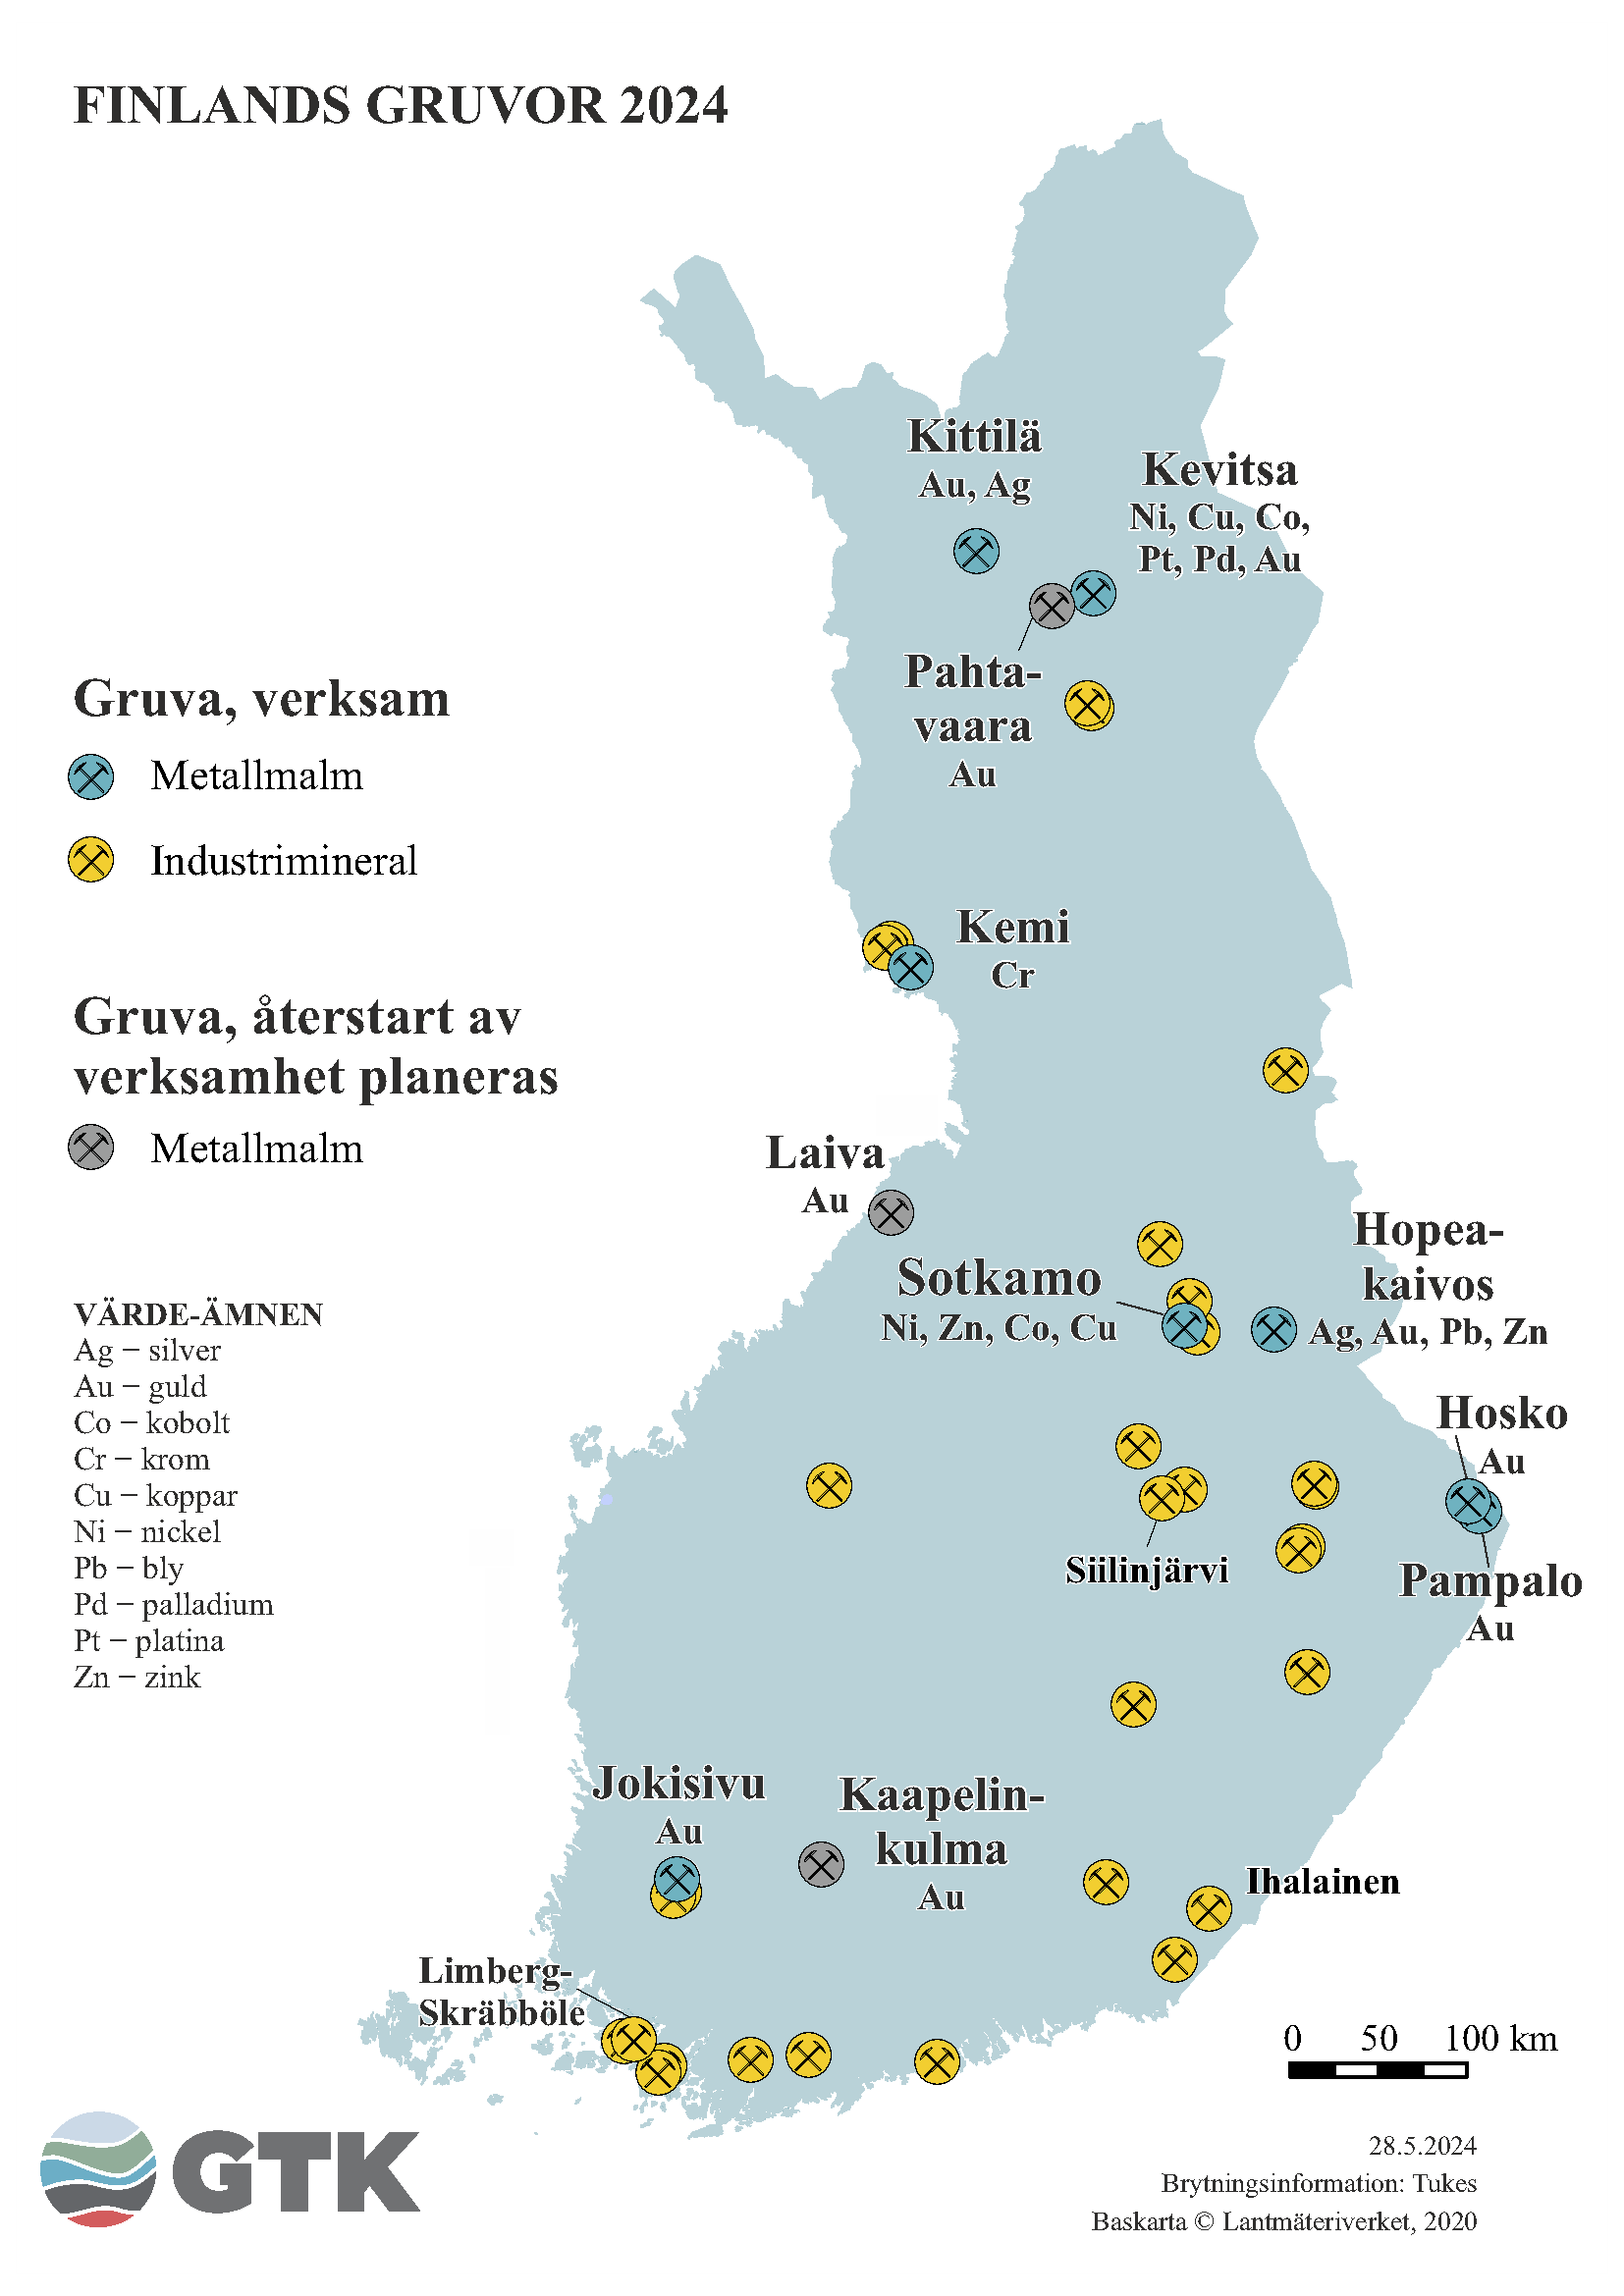 En karta över Finland som visar gruvor i Finland 2024